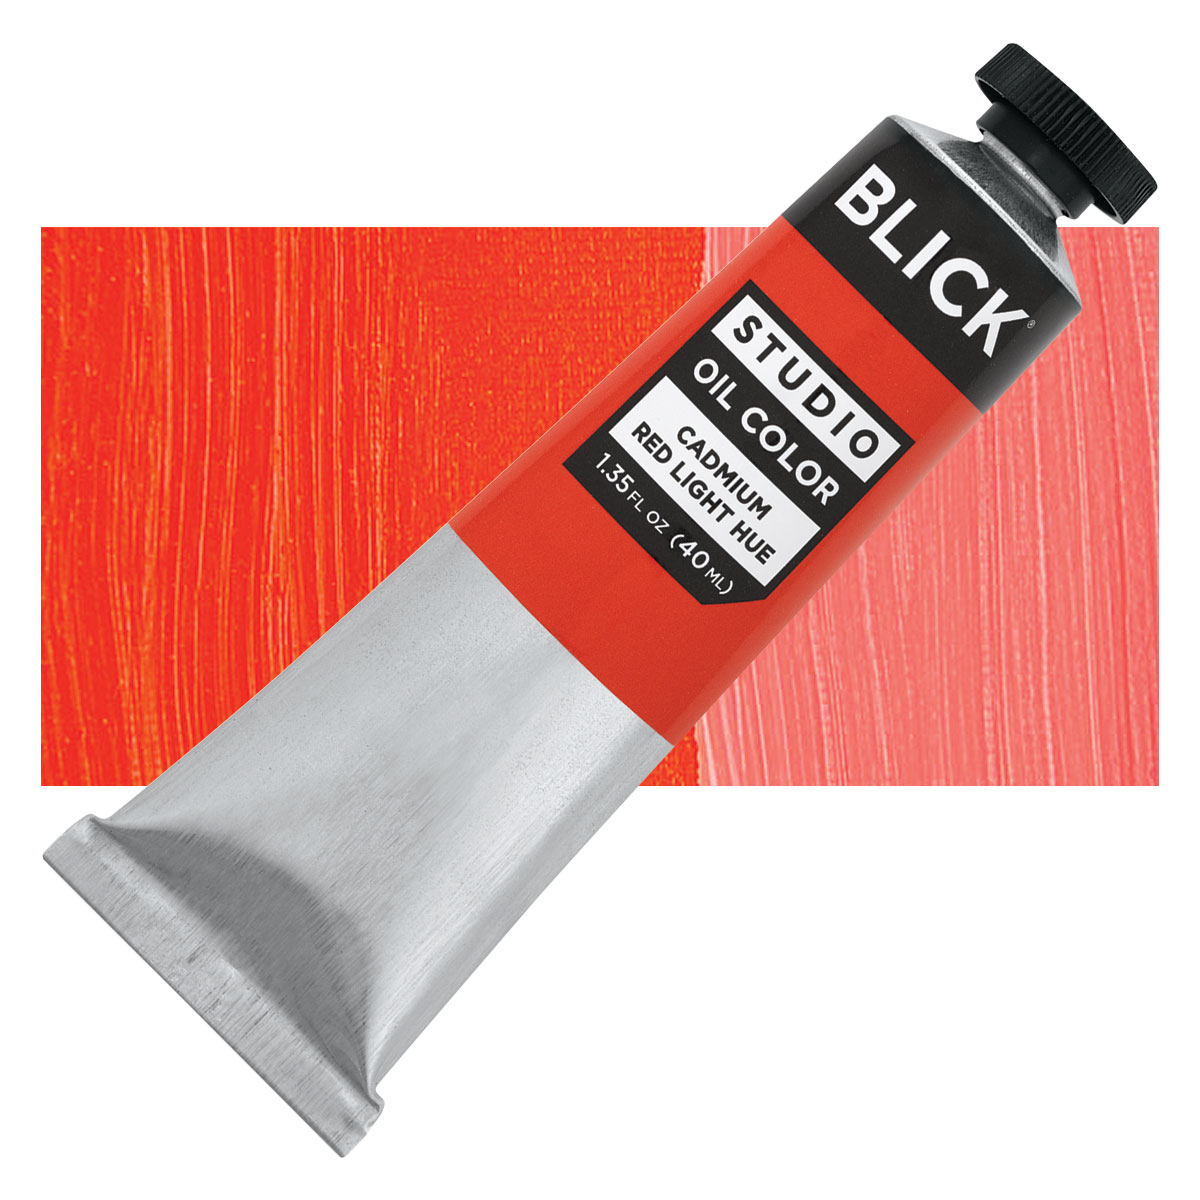 Visne shilling licens Blick Oil Colors - Cadmium Red Light Hue, 40 ml tube | BLICK Art Materials